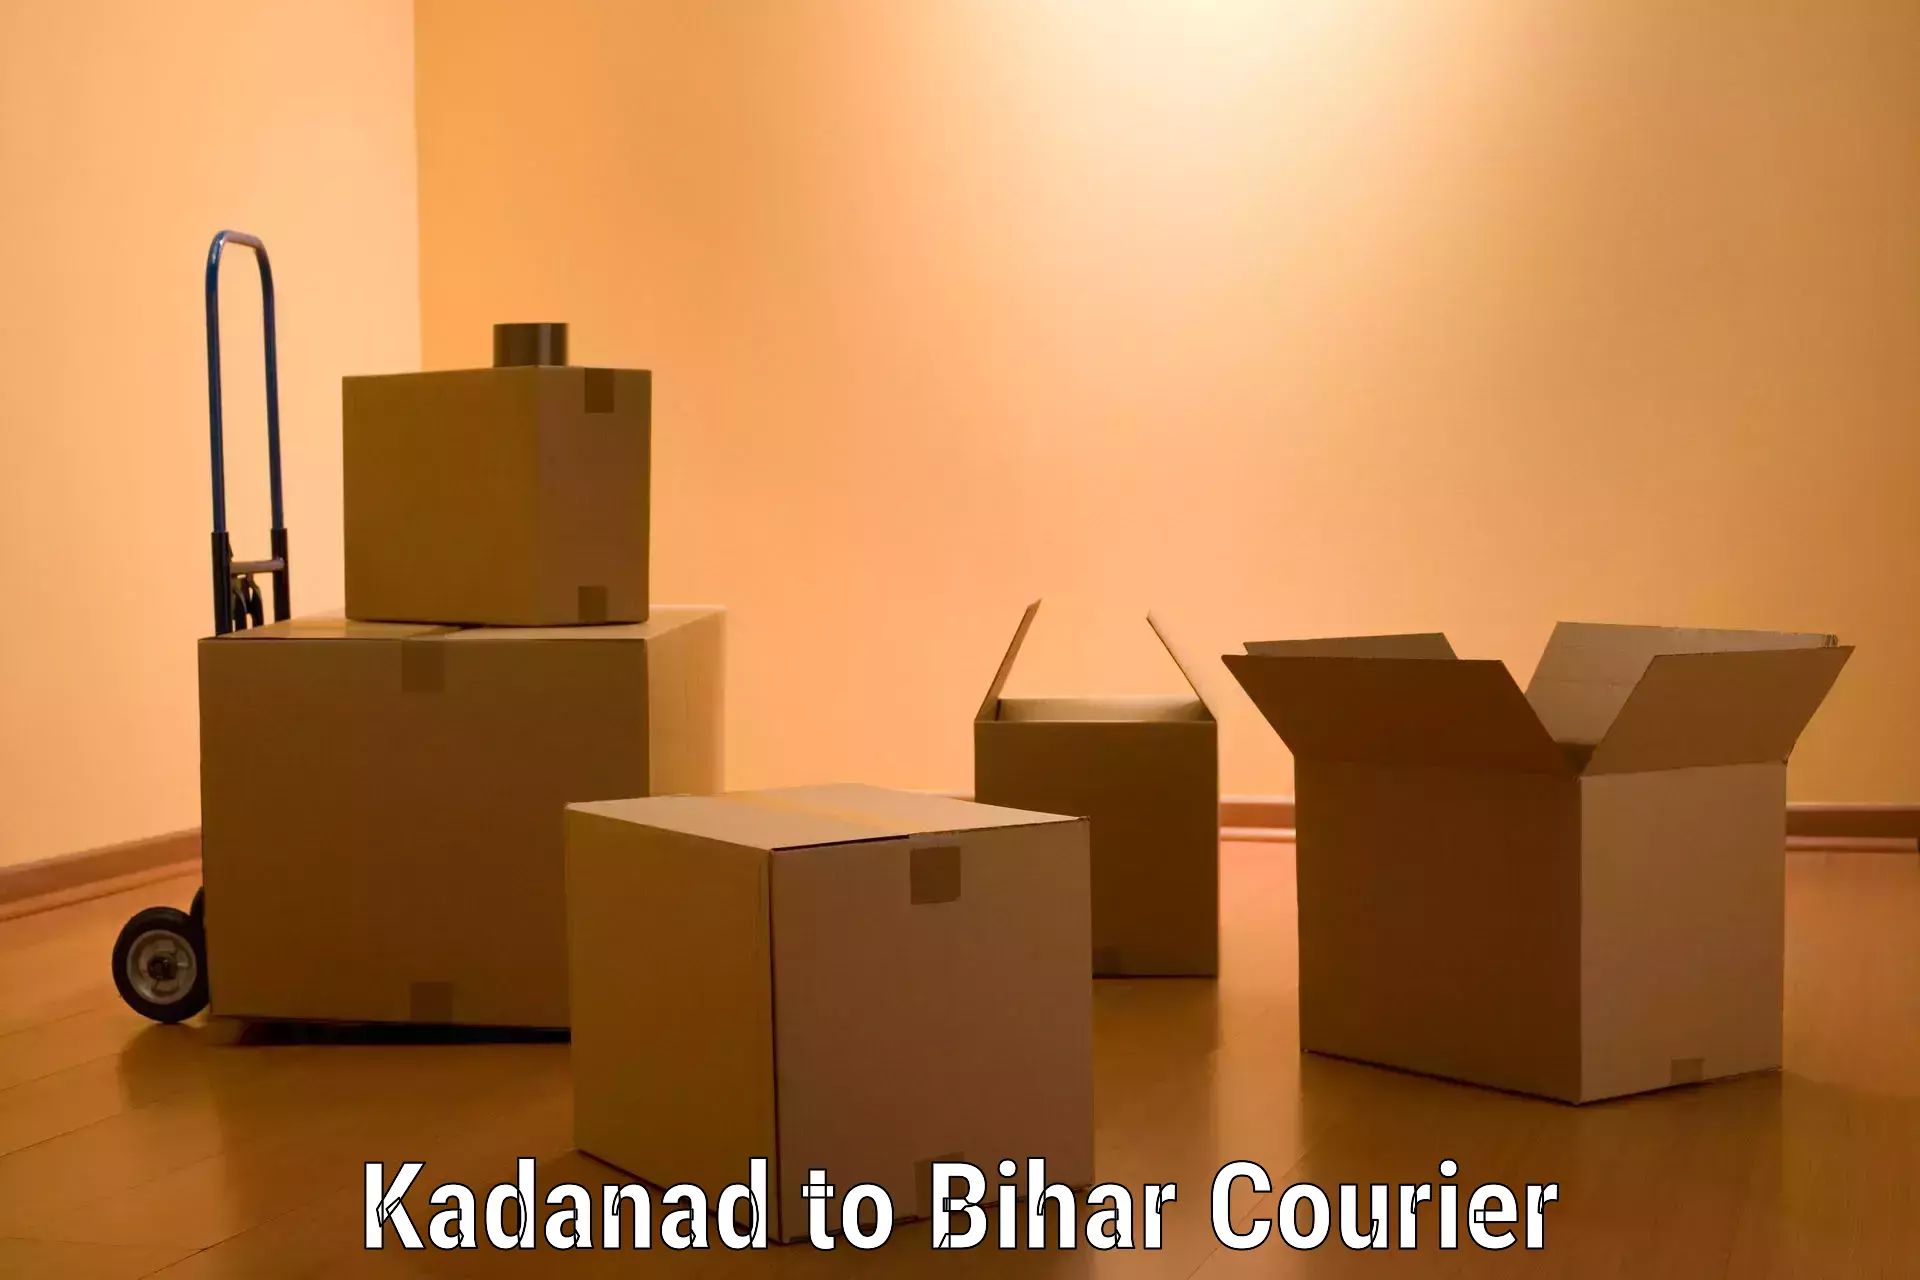 Stress-free moving Kadanad to Rajgir